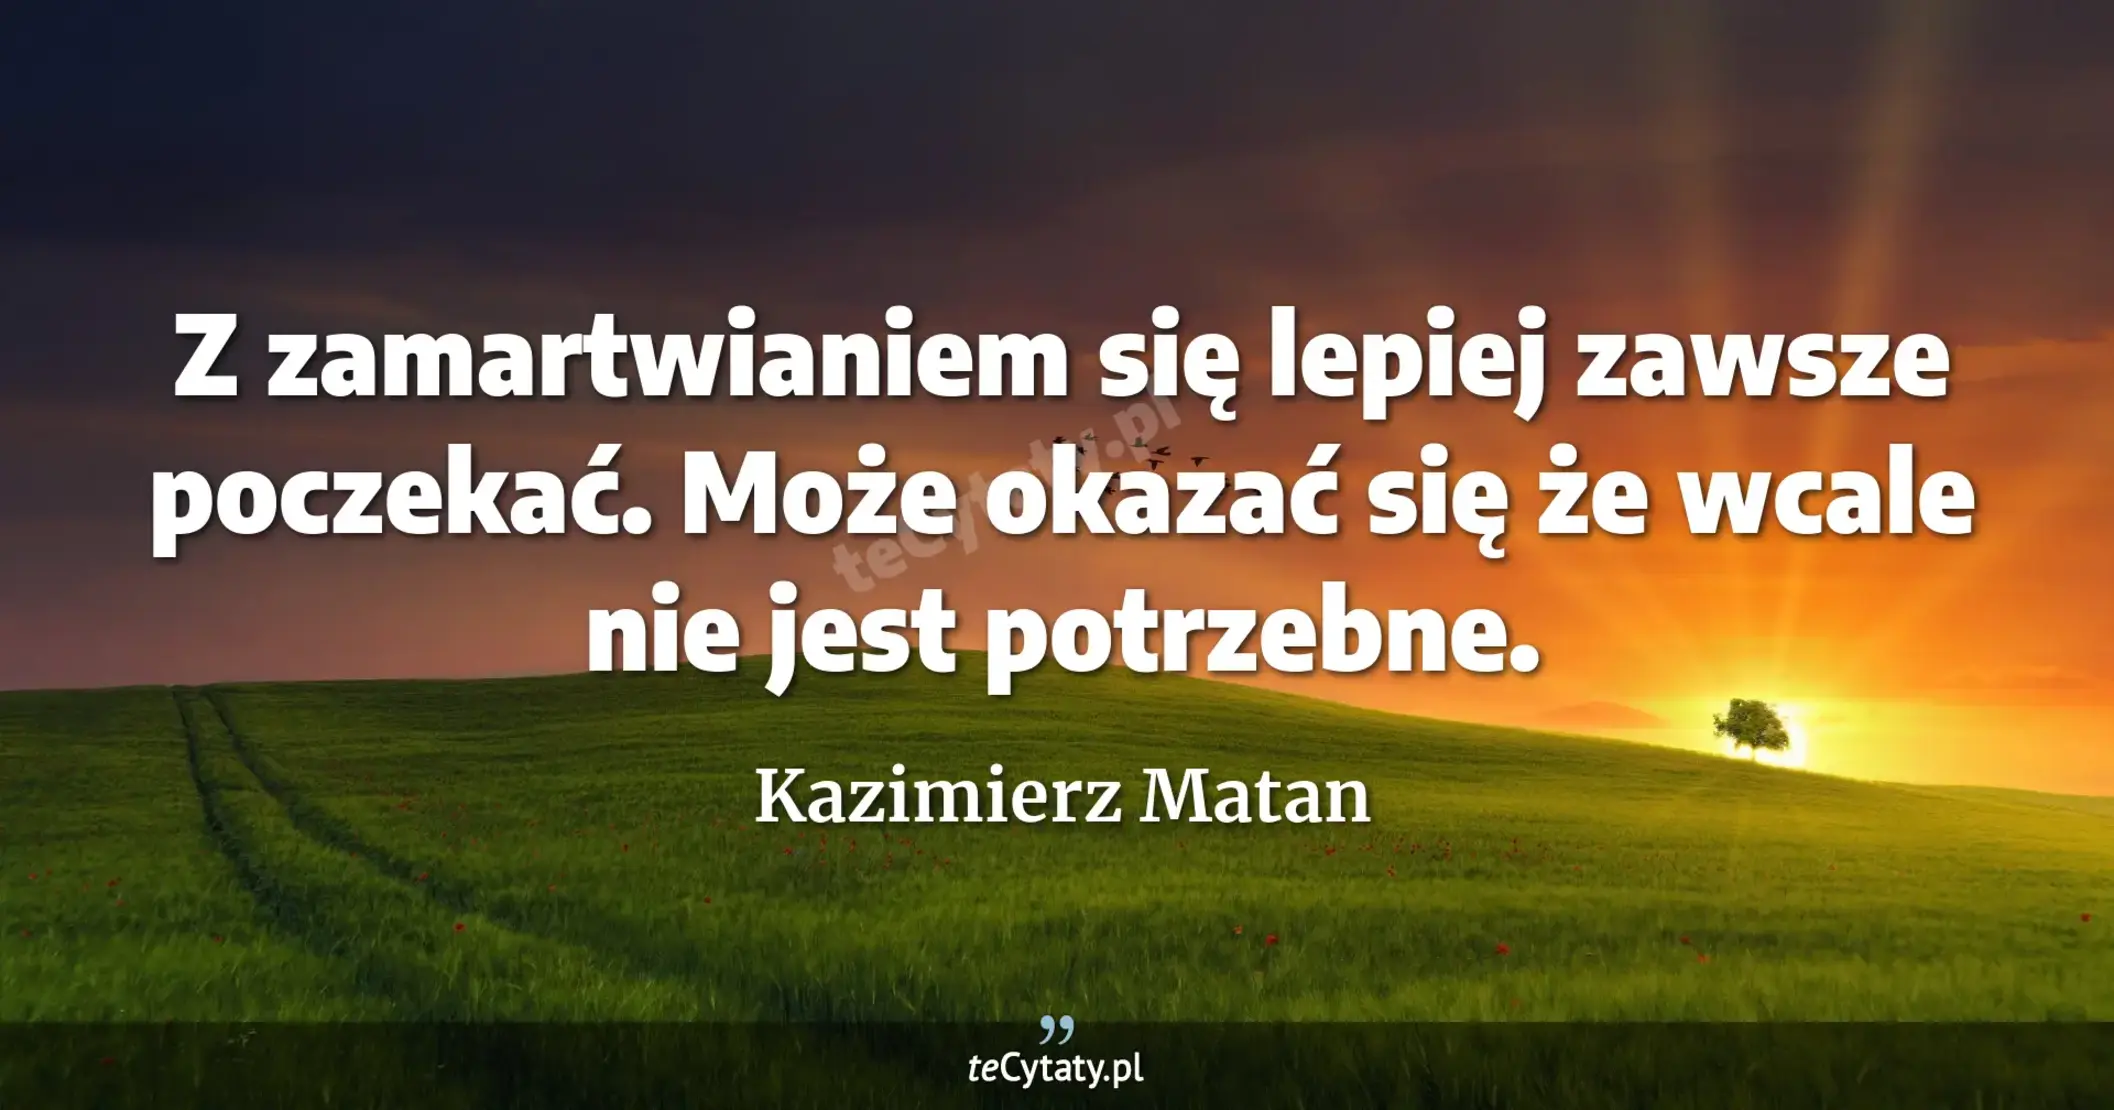 Z zamartwianiem się lepiej zawsze poczekać. Może okazać się że wcale nie jest potrzebne. - Kazimierz Matan